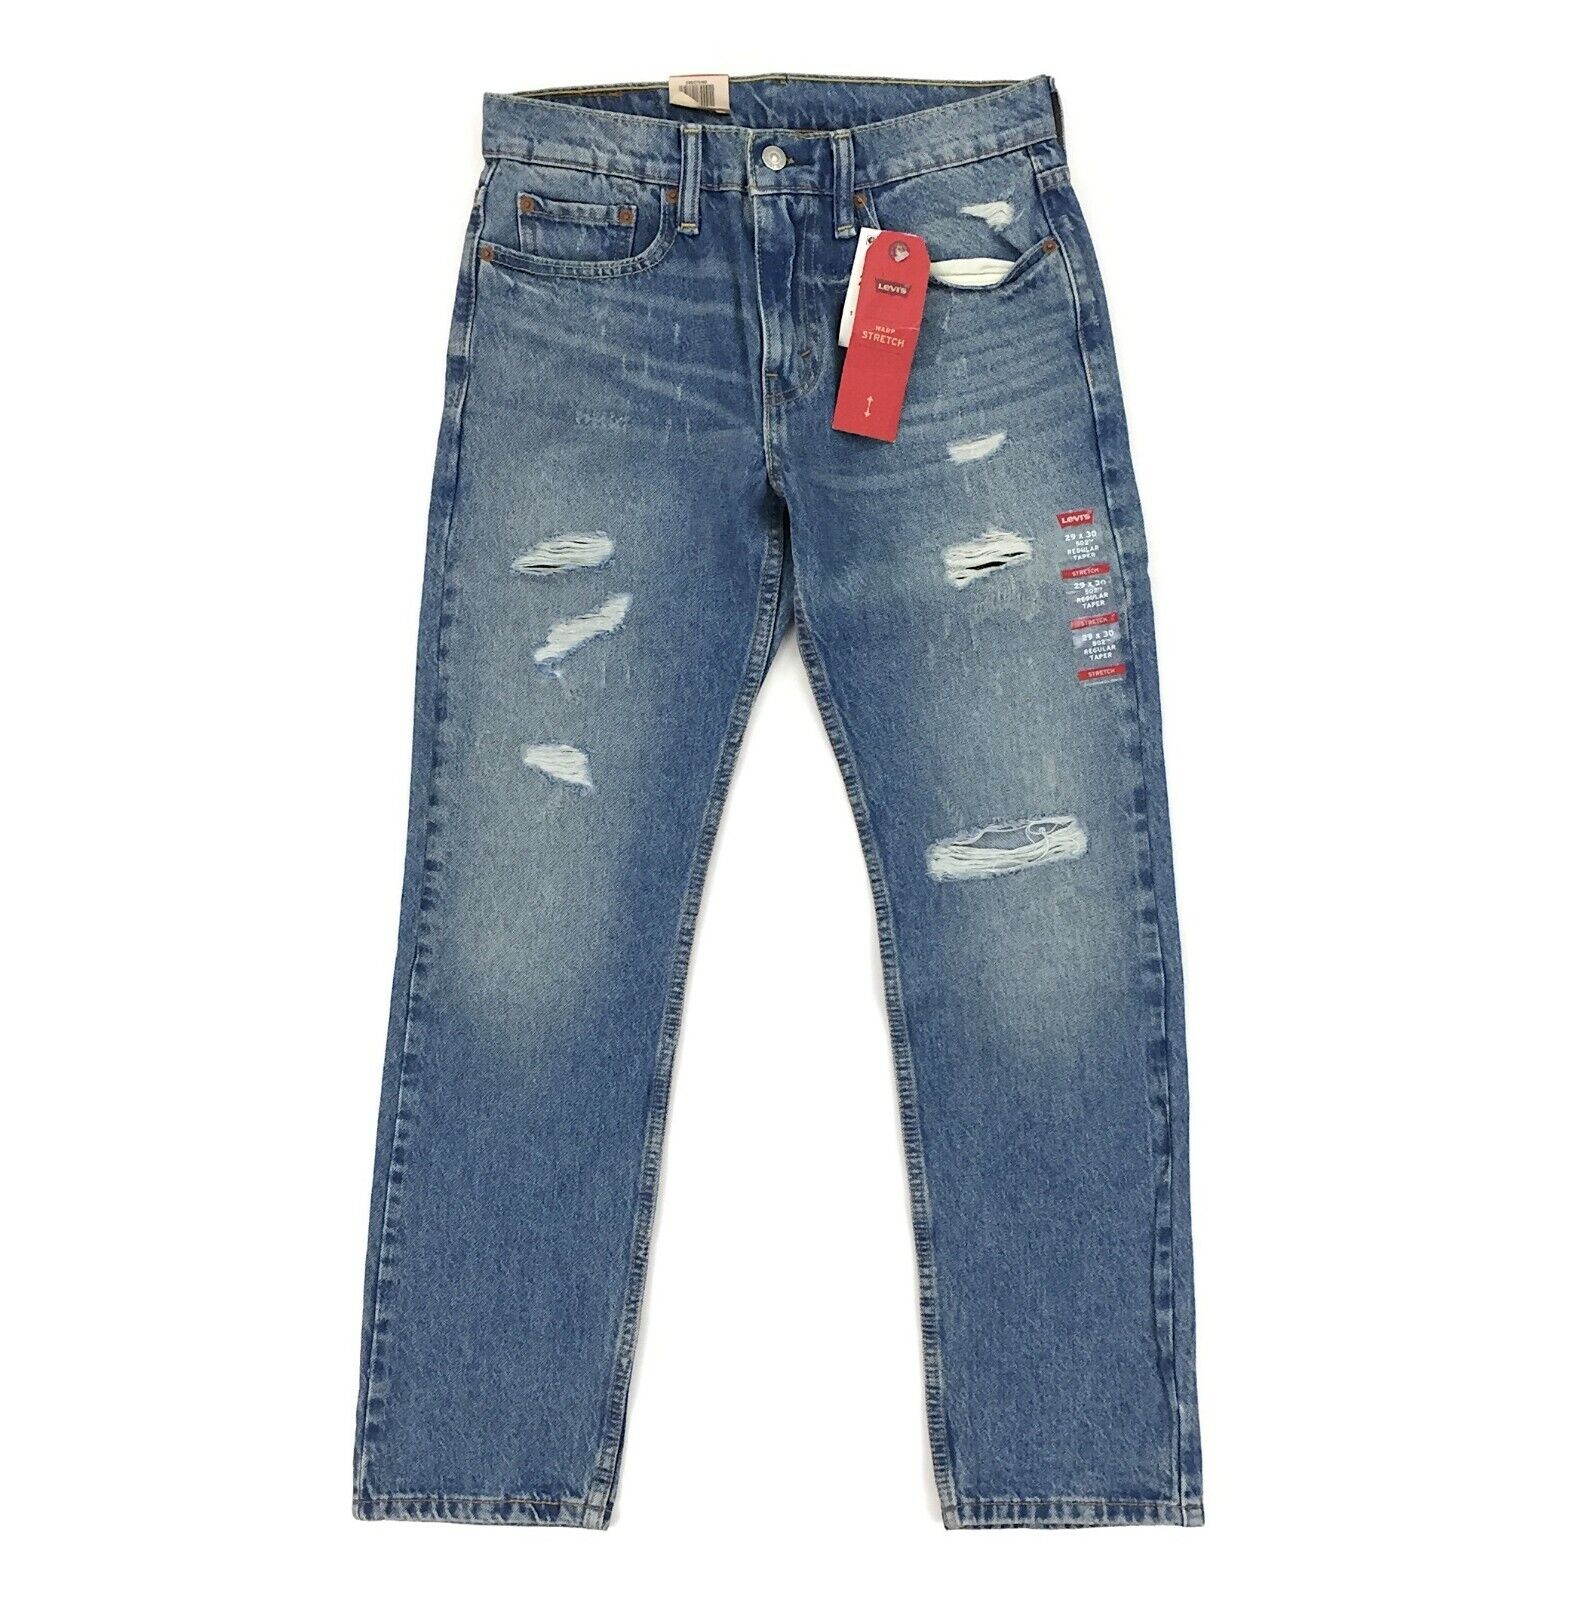 New Levis 502 Regular Taper Jeans Warp Stretch Fit Broom Tree Wash Blue Distr